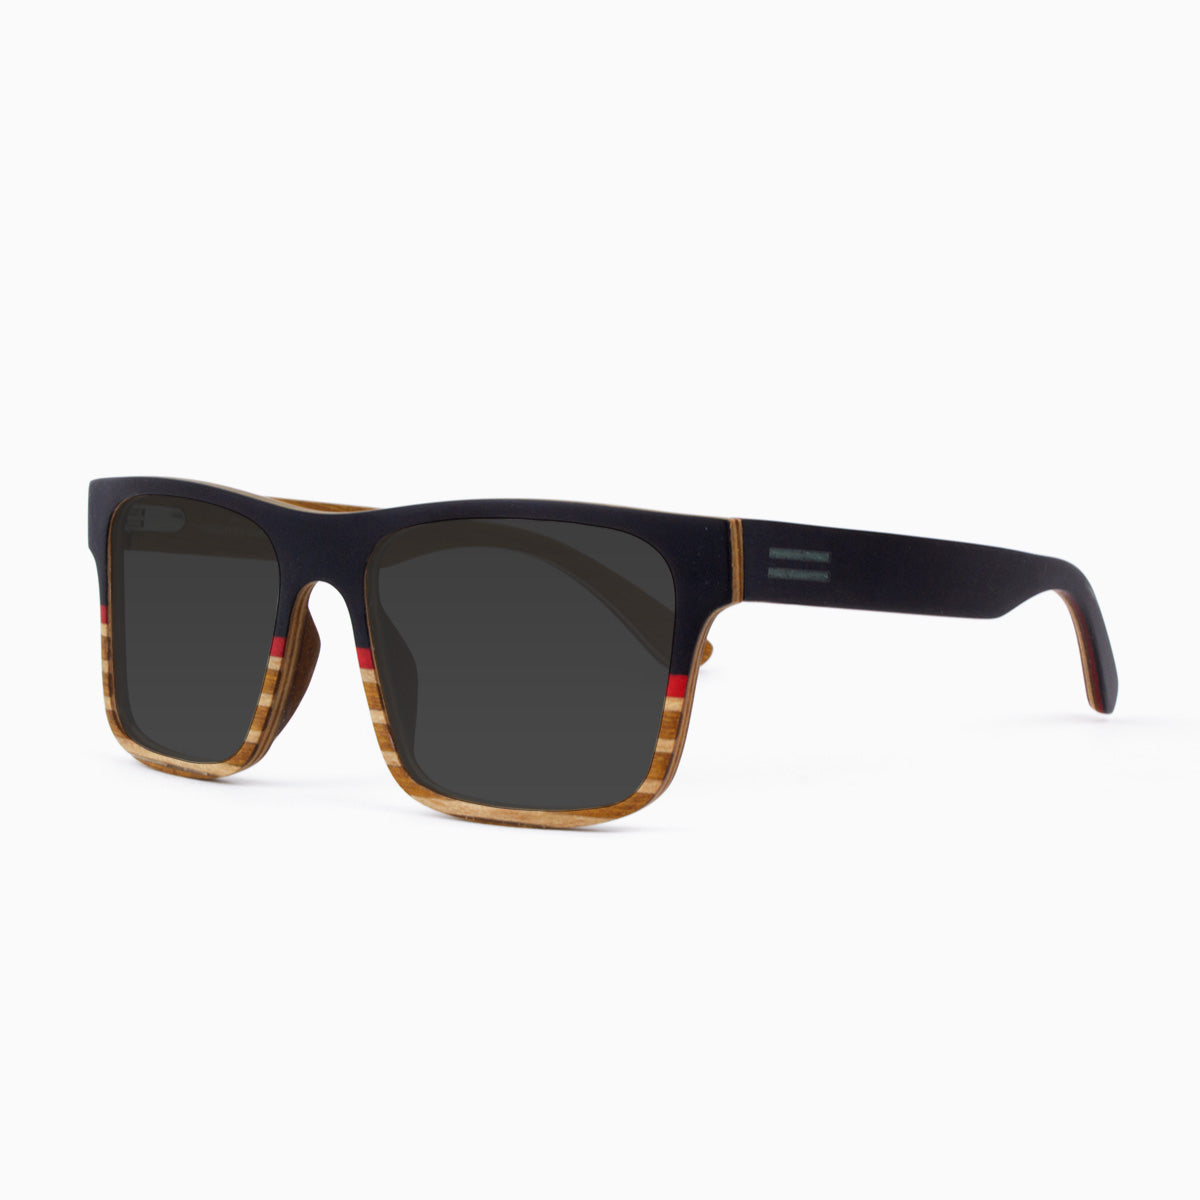 Sebastian - Maritime Wood Sunglasses